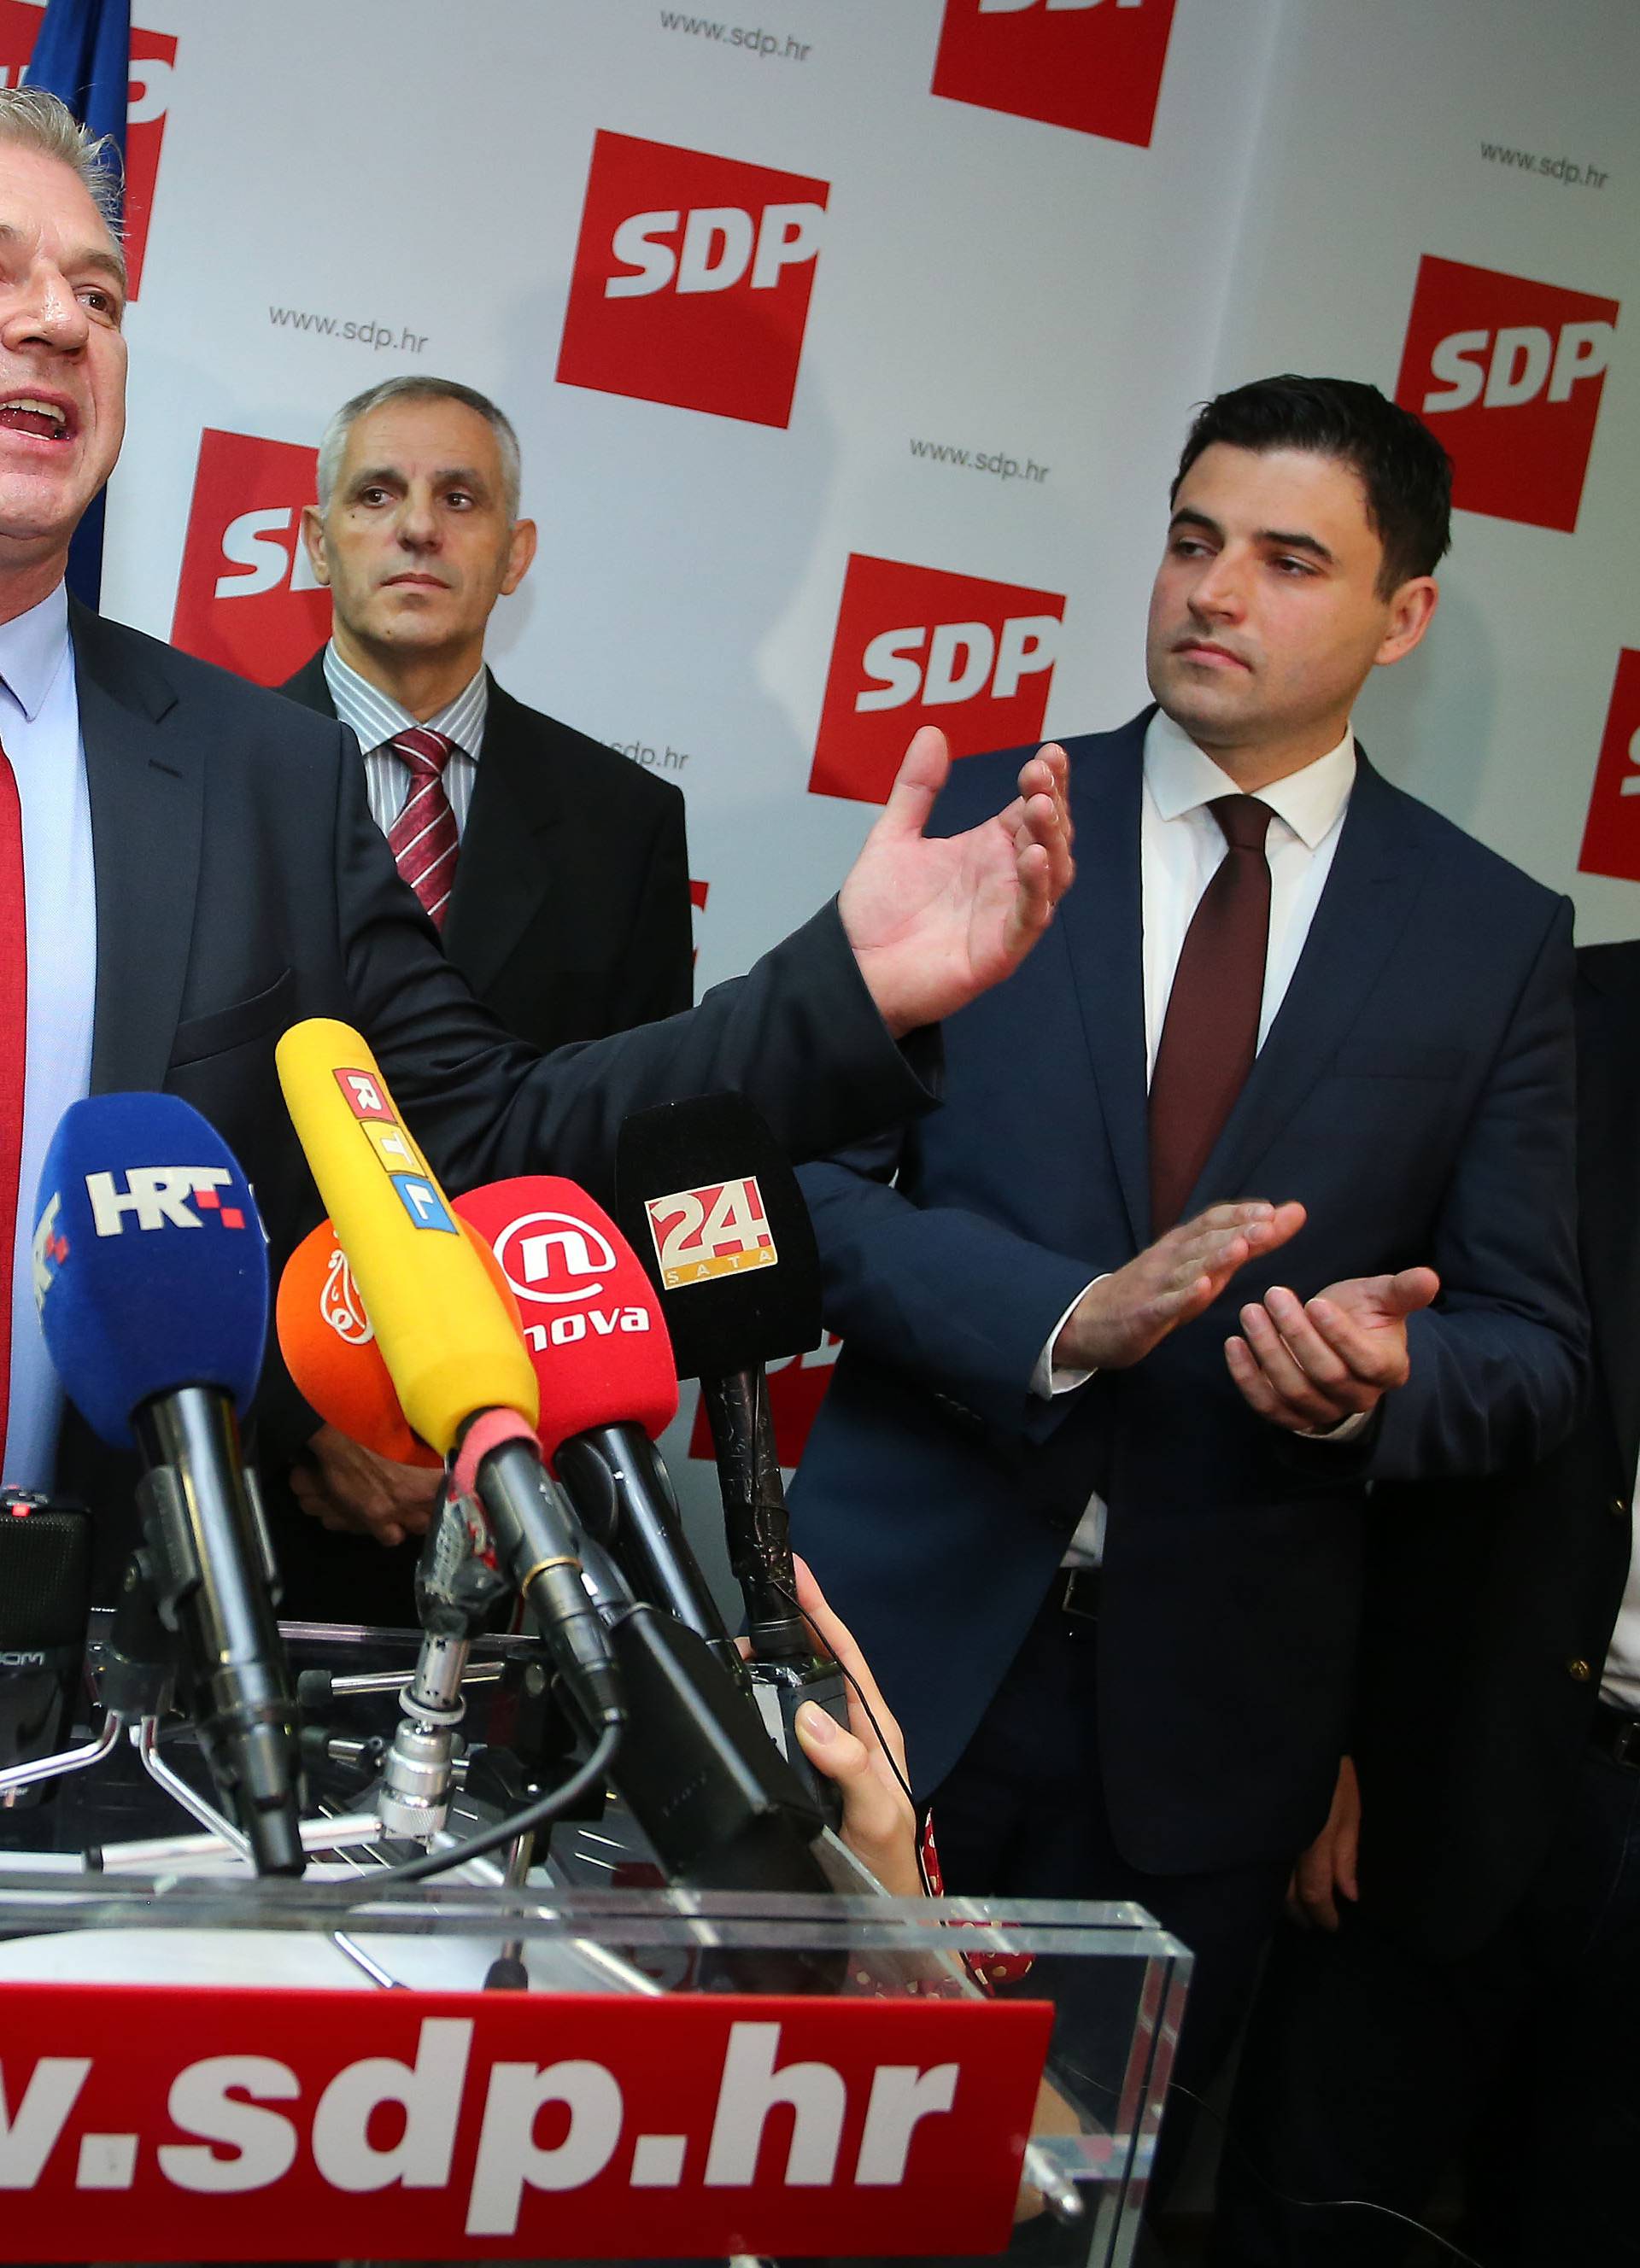 Davor Bernardić novi šef SDP-a, Milanović mu je čestitao